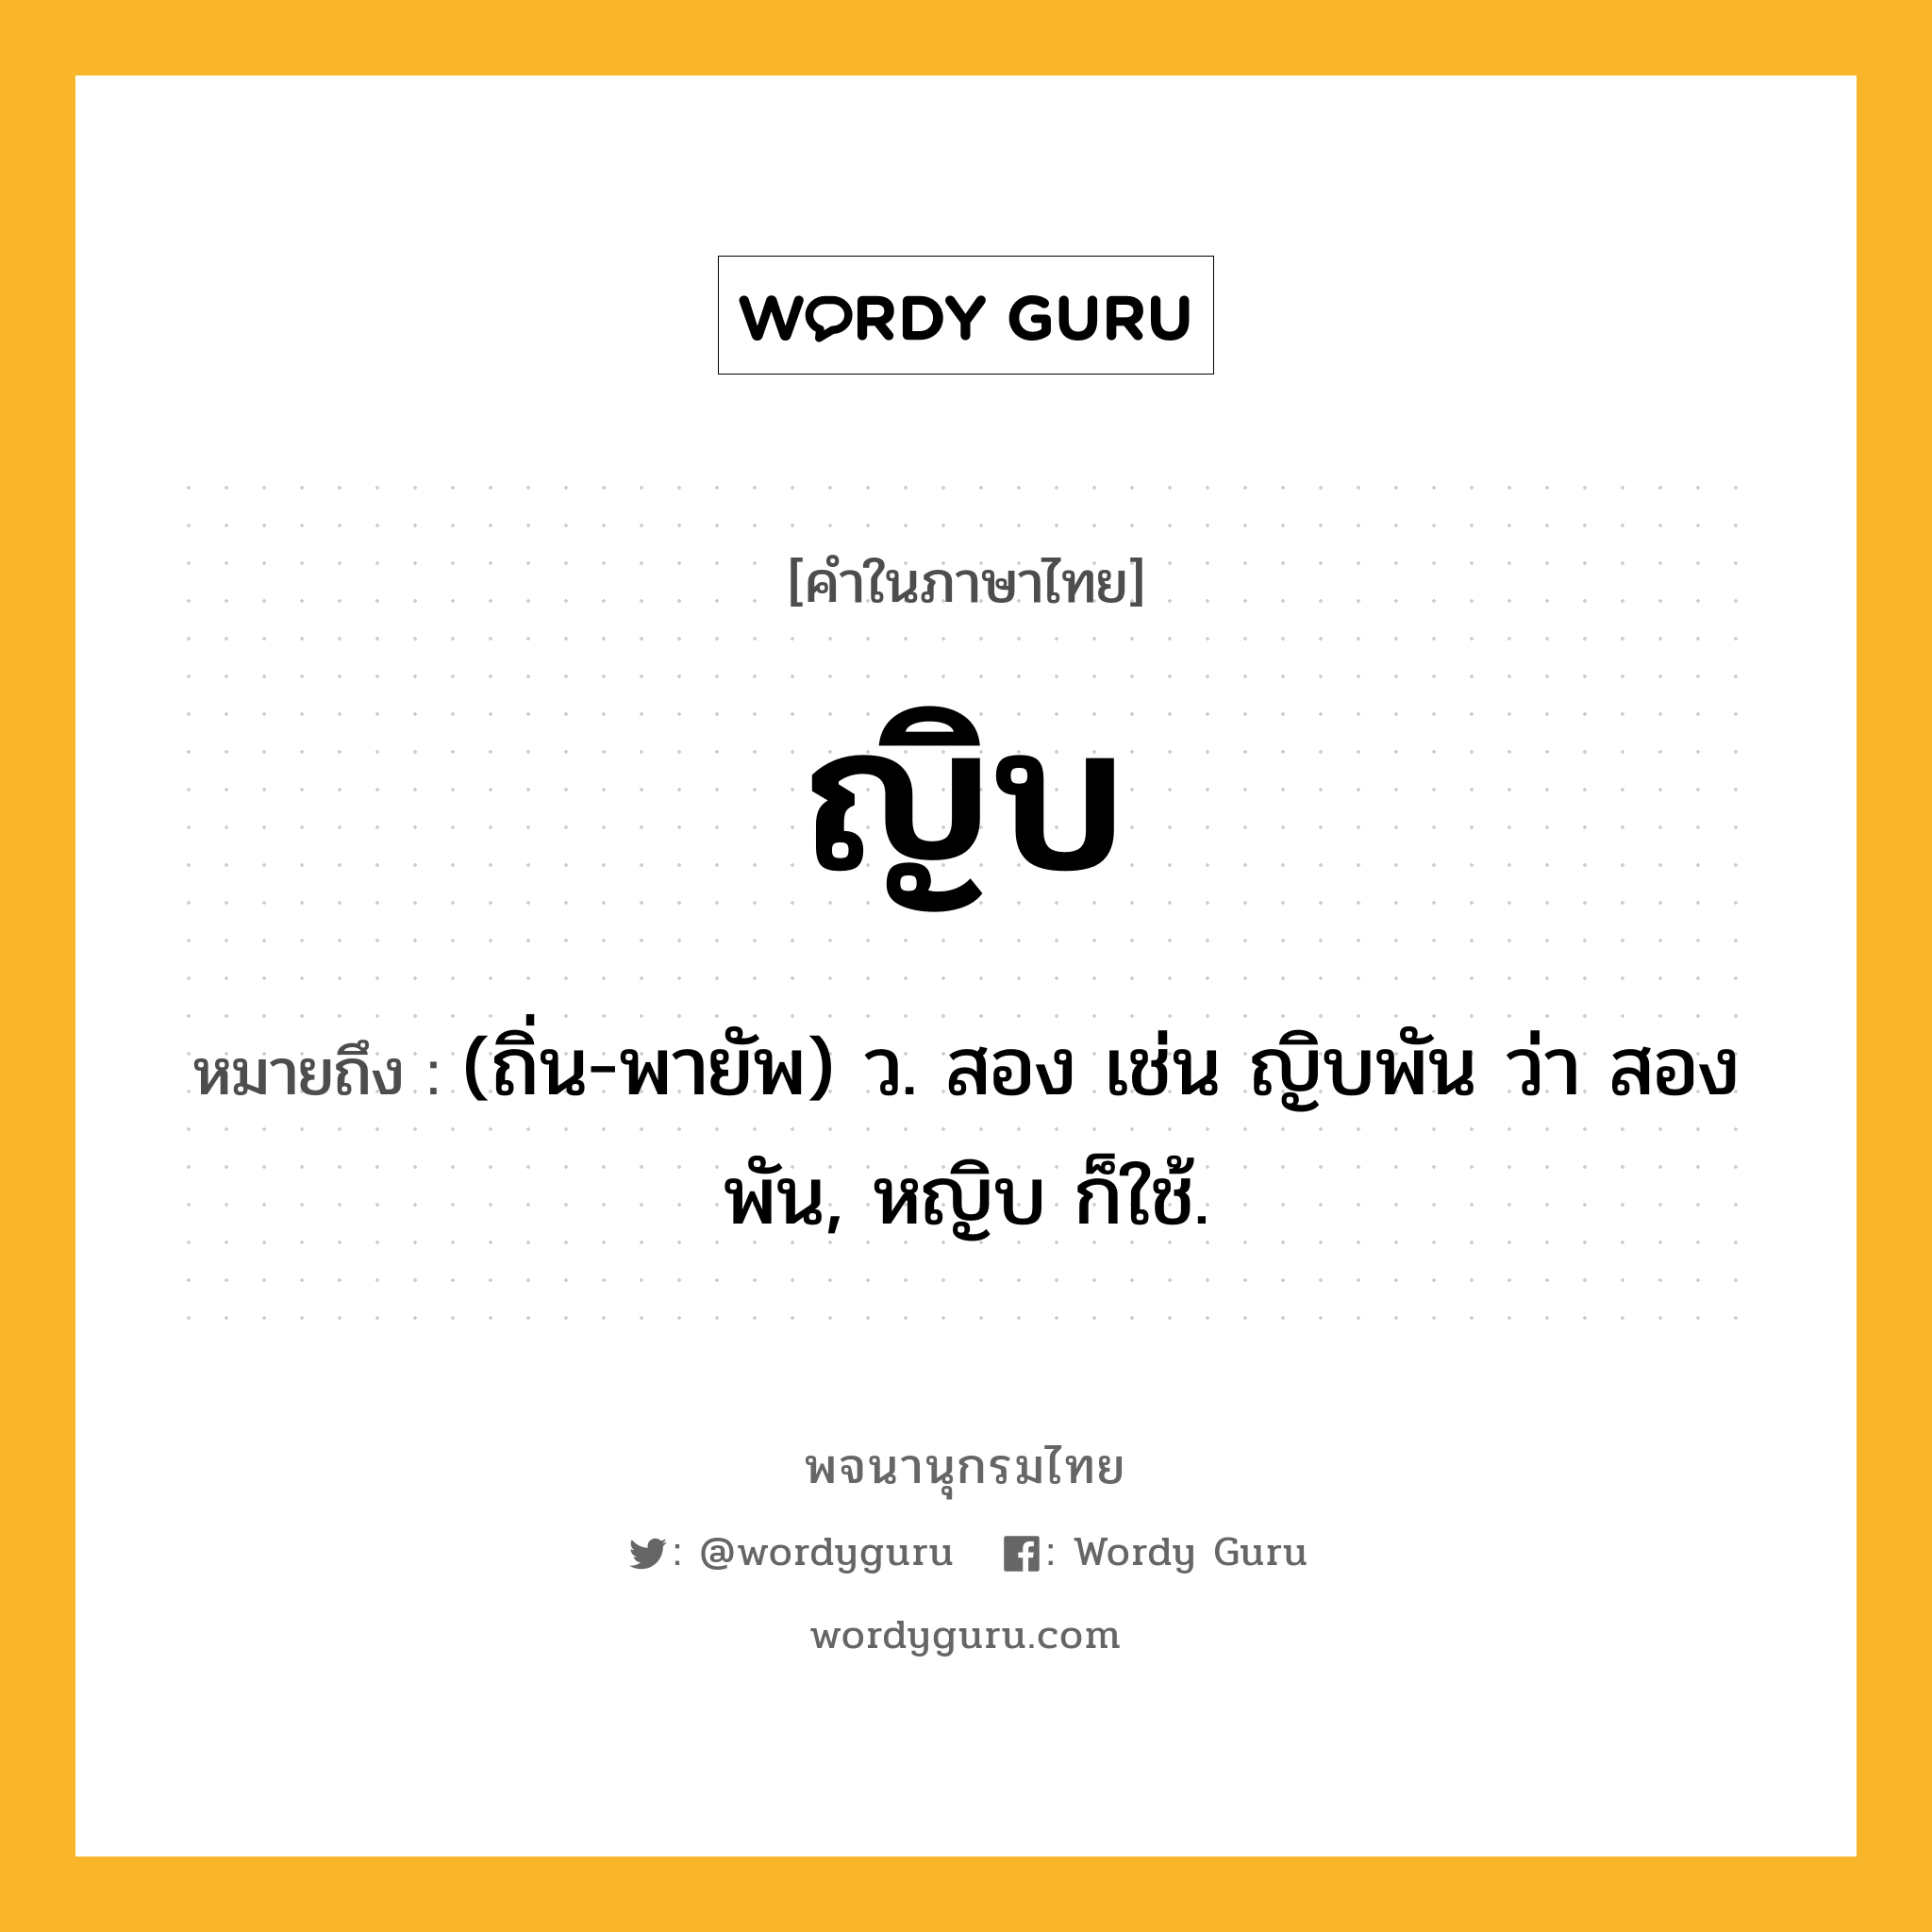 ญิบ ความหมาย หมายถึงอะไร?, คำในภาษาไทย ญิบ หมายถึง (ถิ่น-พายัพ) ว. สอง เช่น ญิบพัน ว่า สองพัน, หญิบ ก็ใช้.